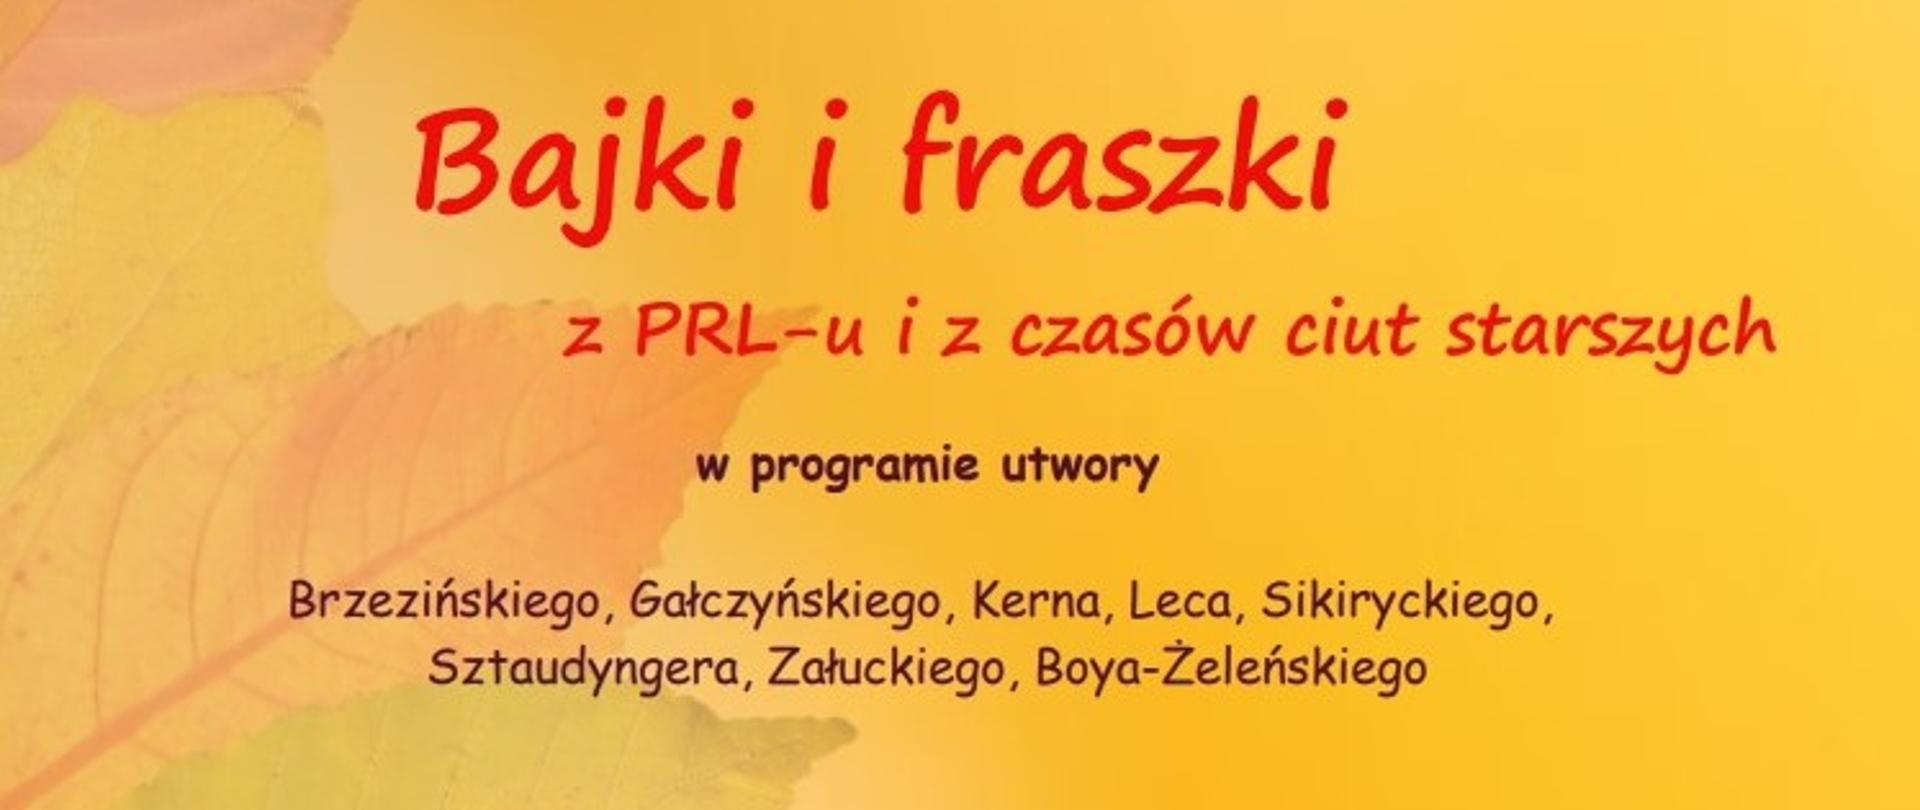 Plakat na żółtym tle, po lewej stronie jesienne liście, napisy czarne i czerwone "Bajki i fraszki z PRL-u i czasów ciut starszych"